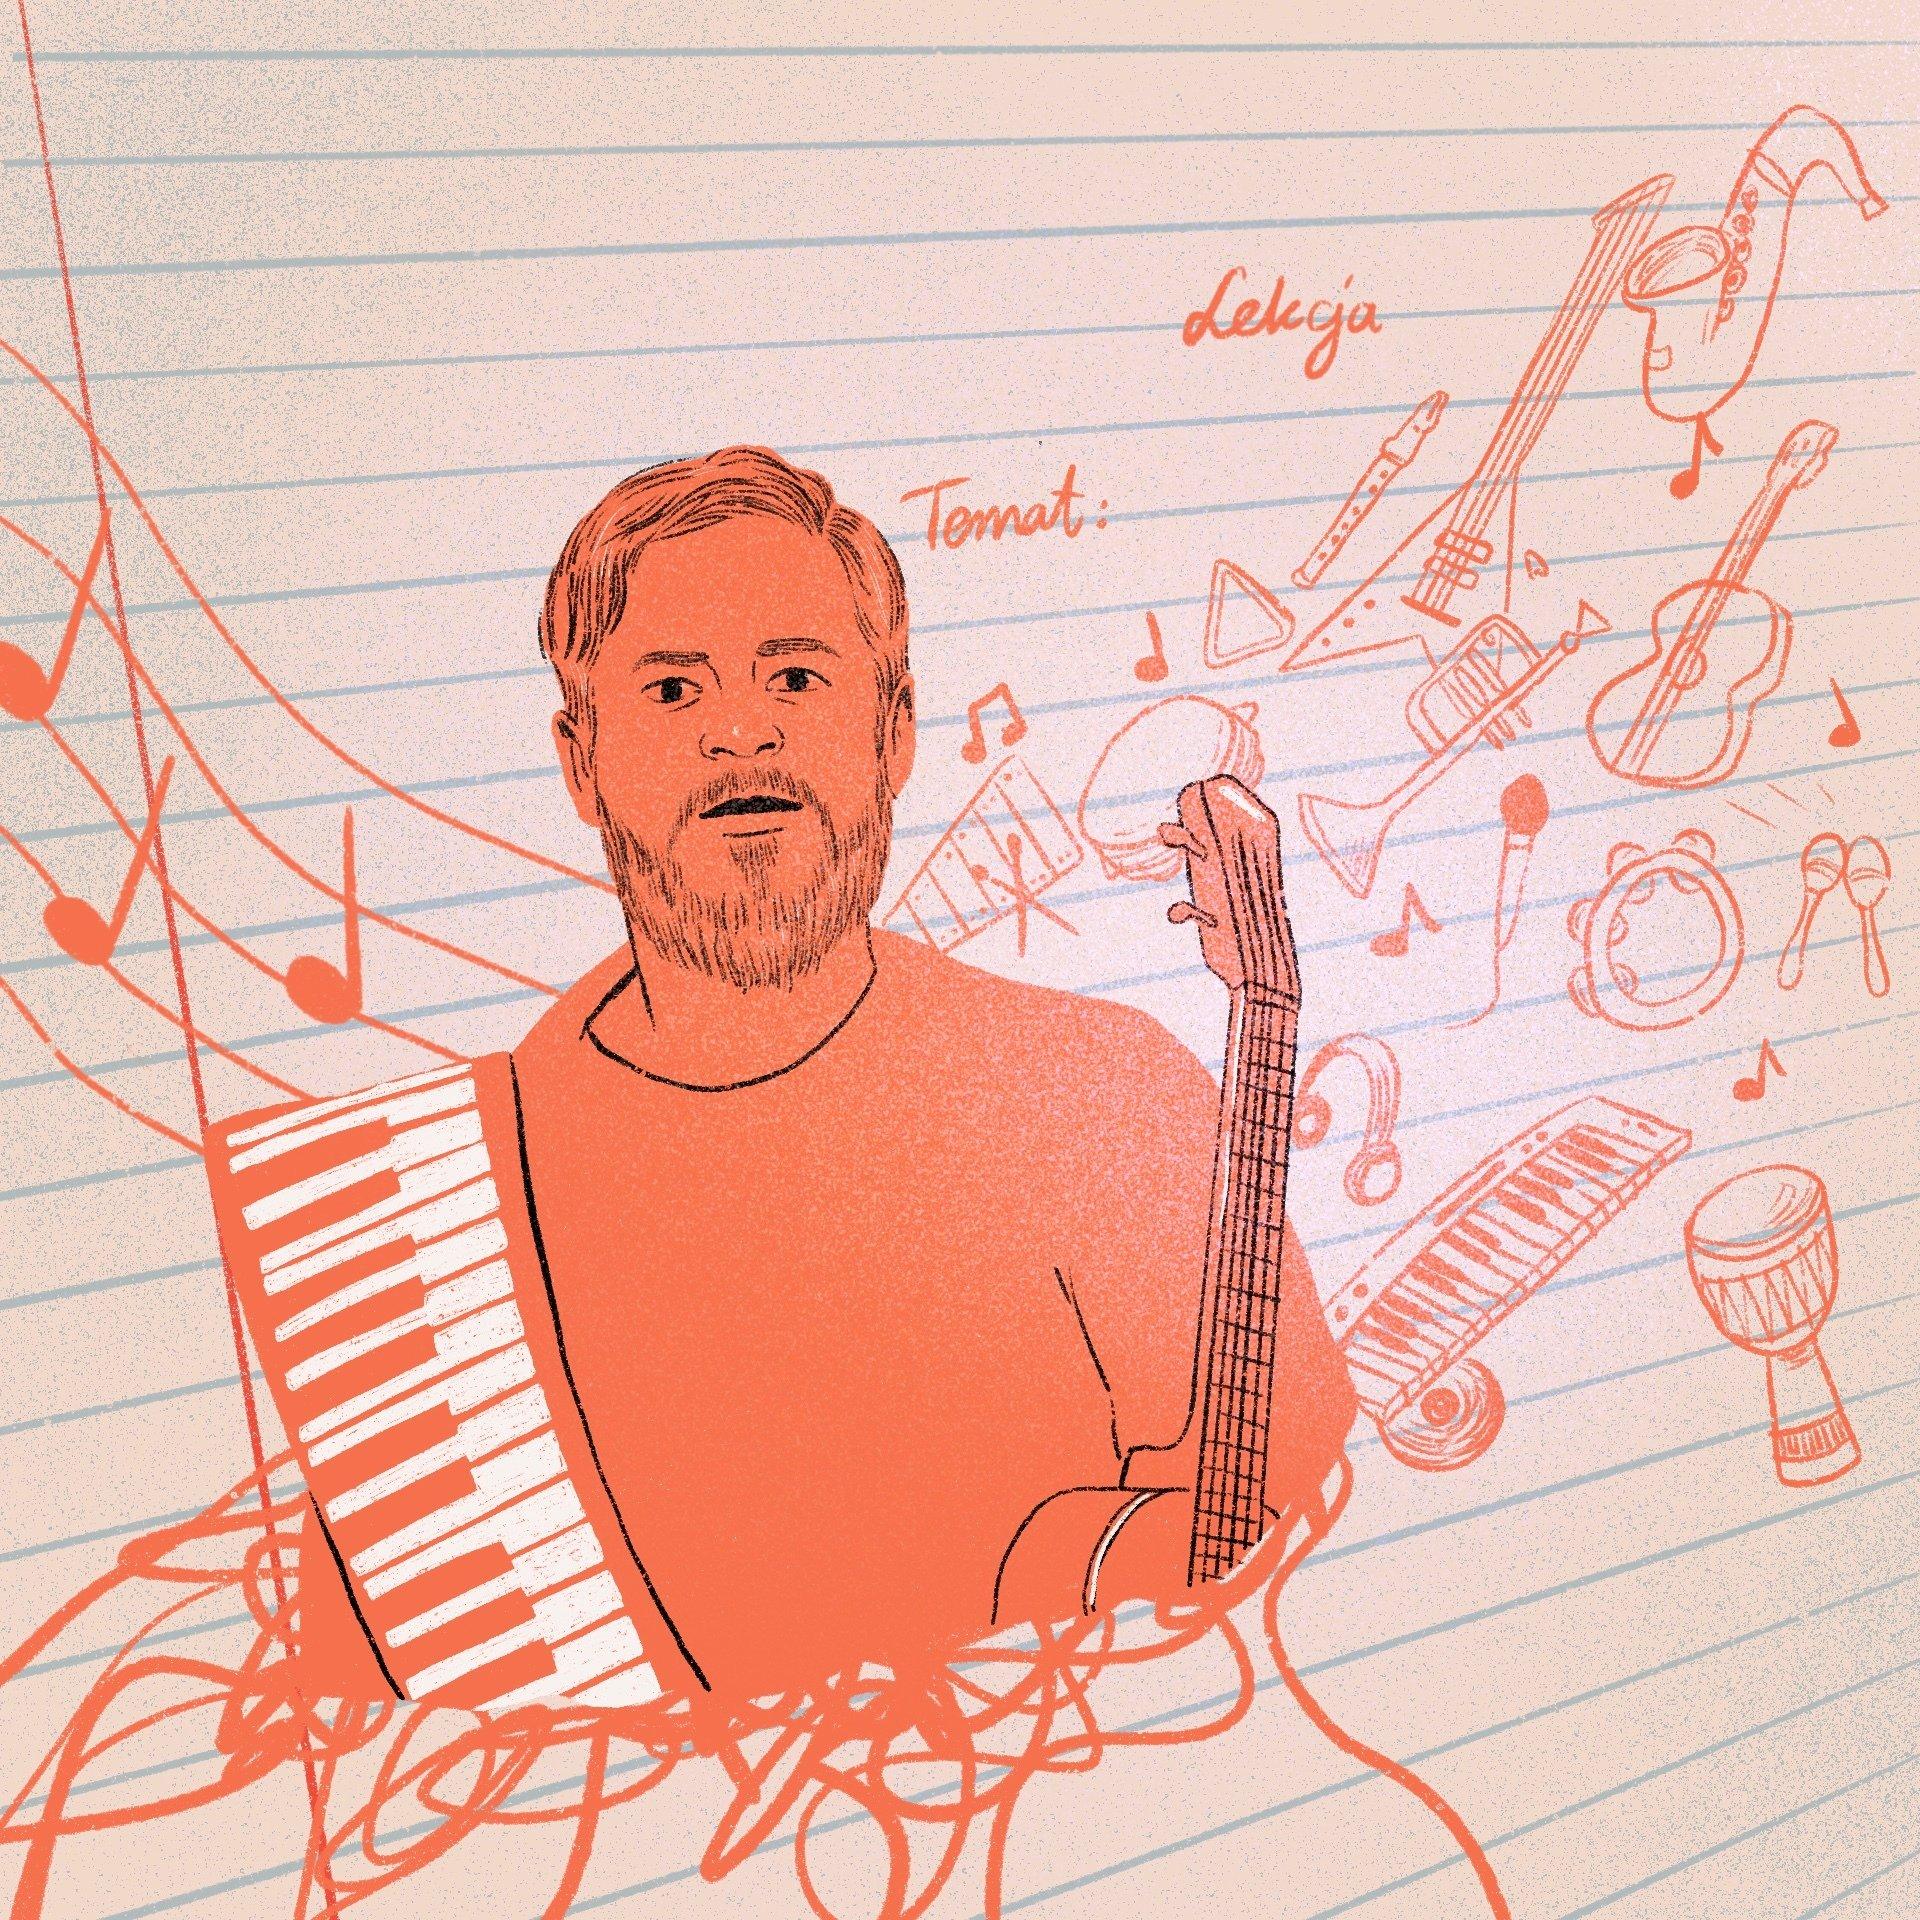 ilustracja przedstawiająca mężczyznę, trzymającego na ramieniu silikonowy keyboard i ukulele, na tle zeszytu w linię z instrumentami muzycznymi